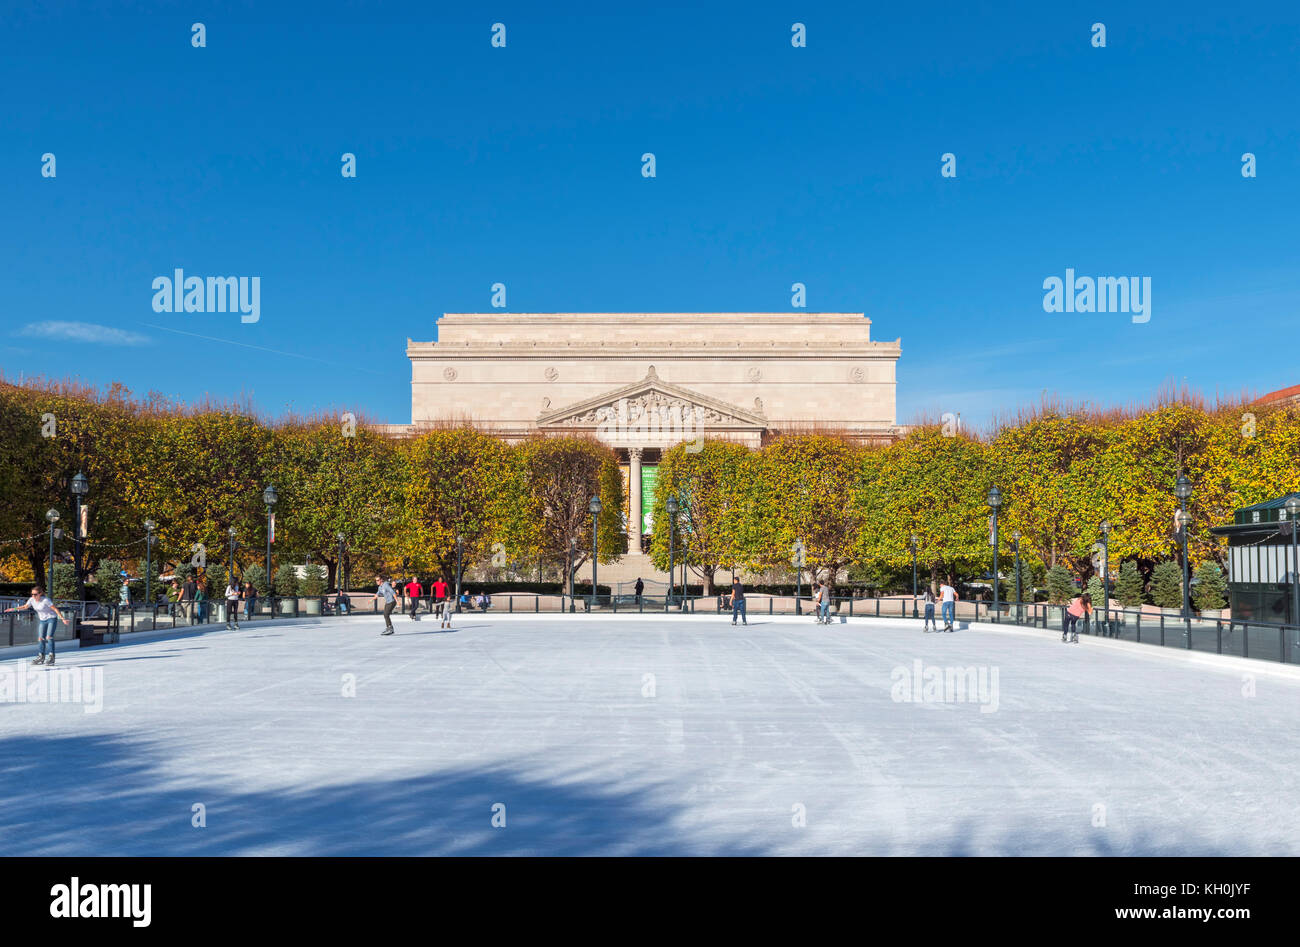 Eislaufbahn vor der National Archives Gebäude, National Gallery Sculpture Garden, Washington DC, USA Stockfoto